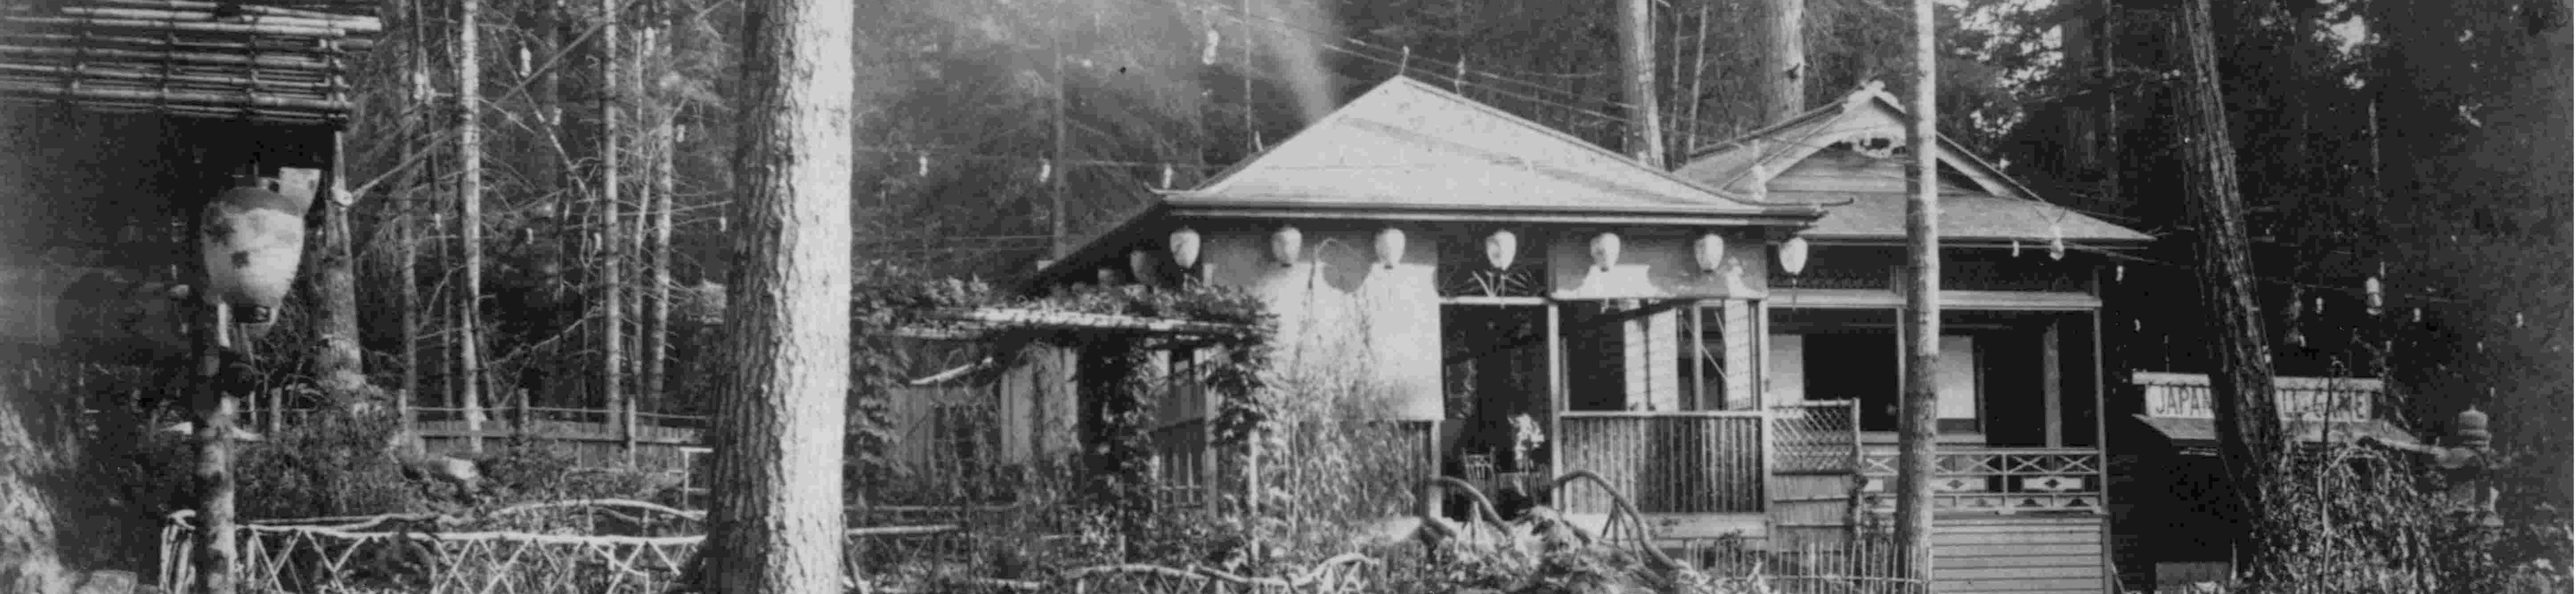 Esquimalt Gorge Park Japanese-garden archive number v989-19-7